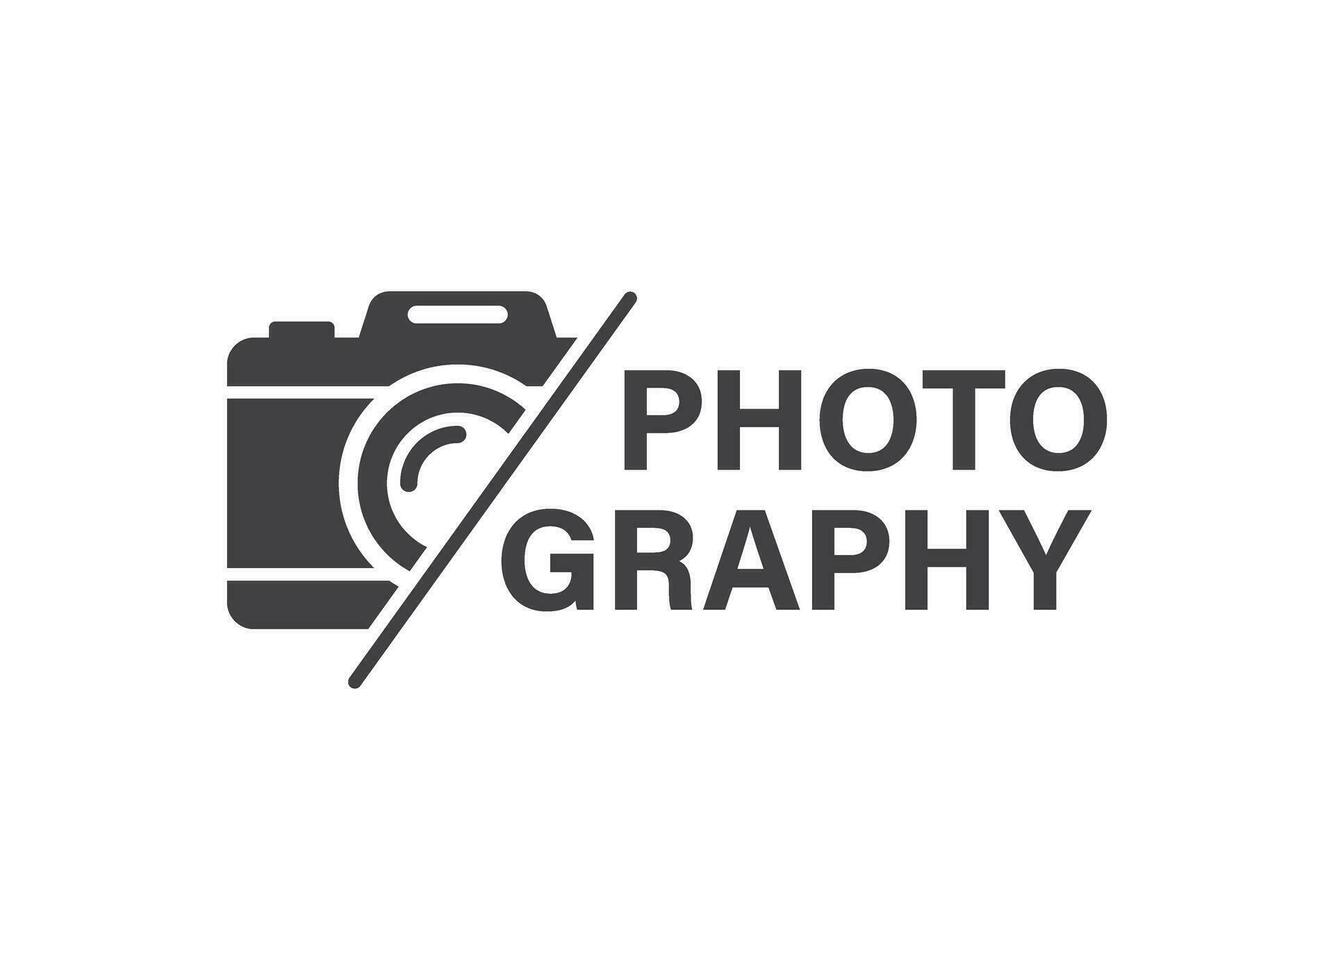 kamera ikon i platt stil. fotografi vektor illustration på isolerat bakgrund. Foto tecken företag begrepp.